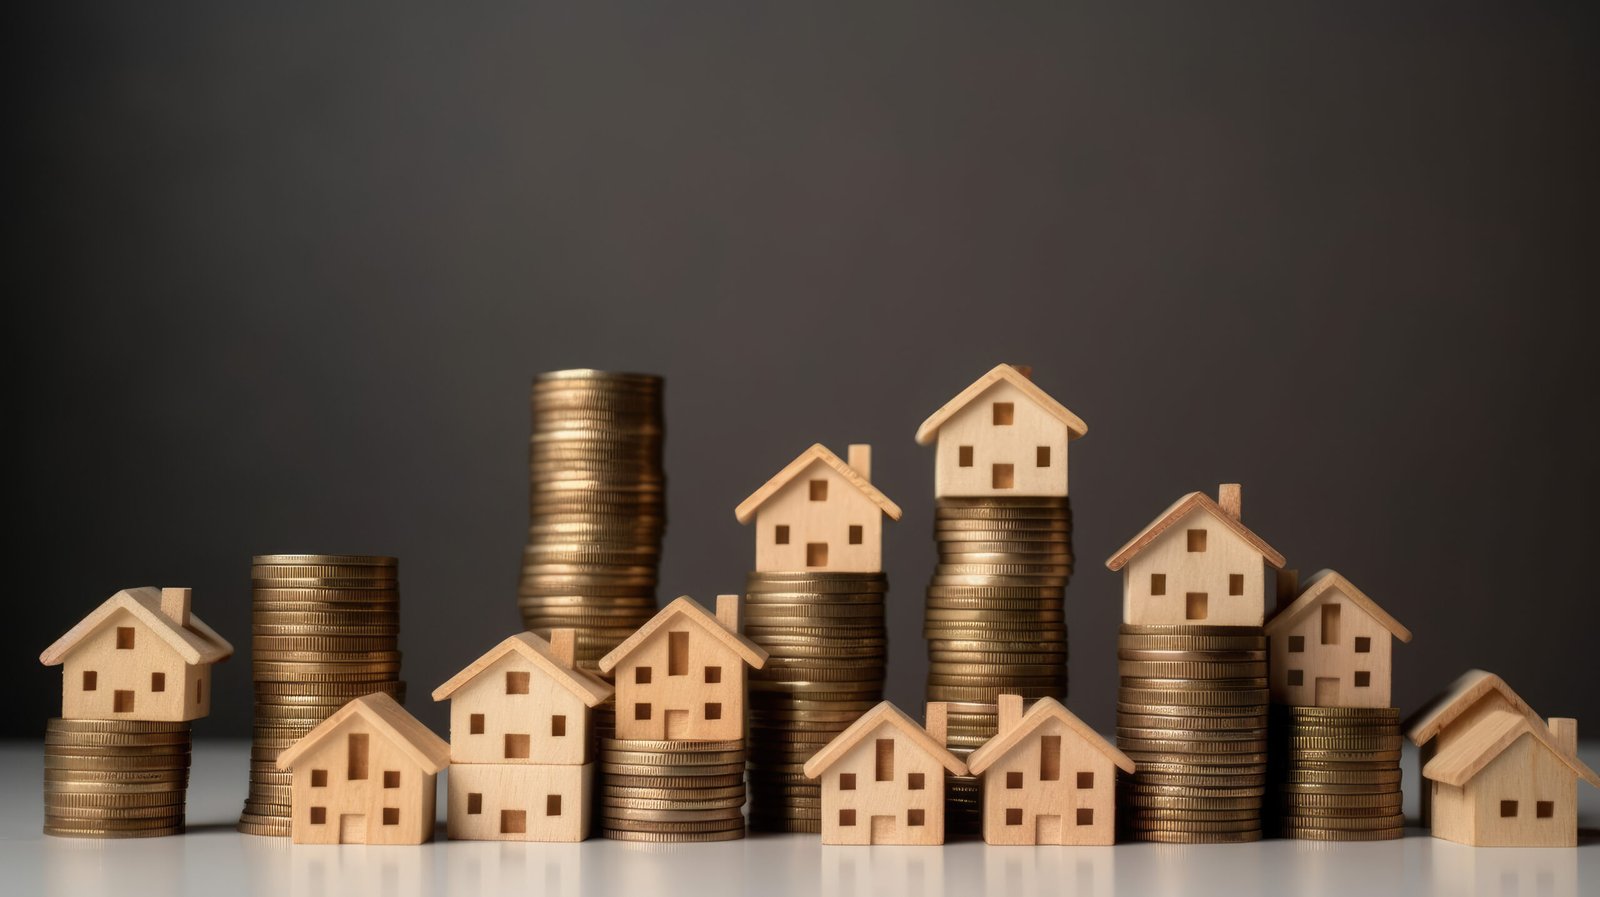 Un alignement ascendant de pièces de monnaie avec des maisons en bois qui représente la valeur croissante de l'immobilier et la solidité des investissements dans ce secteur.